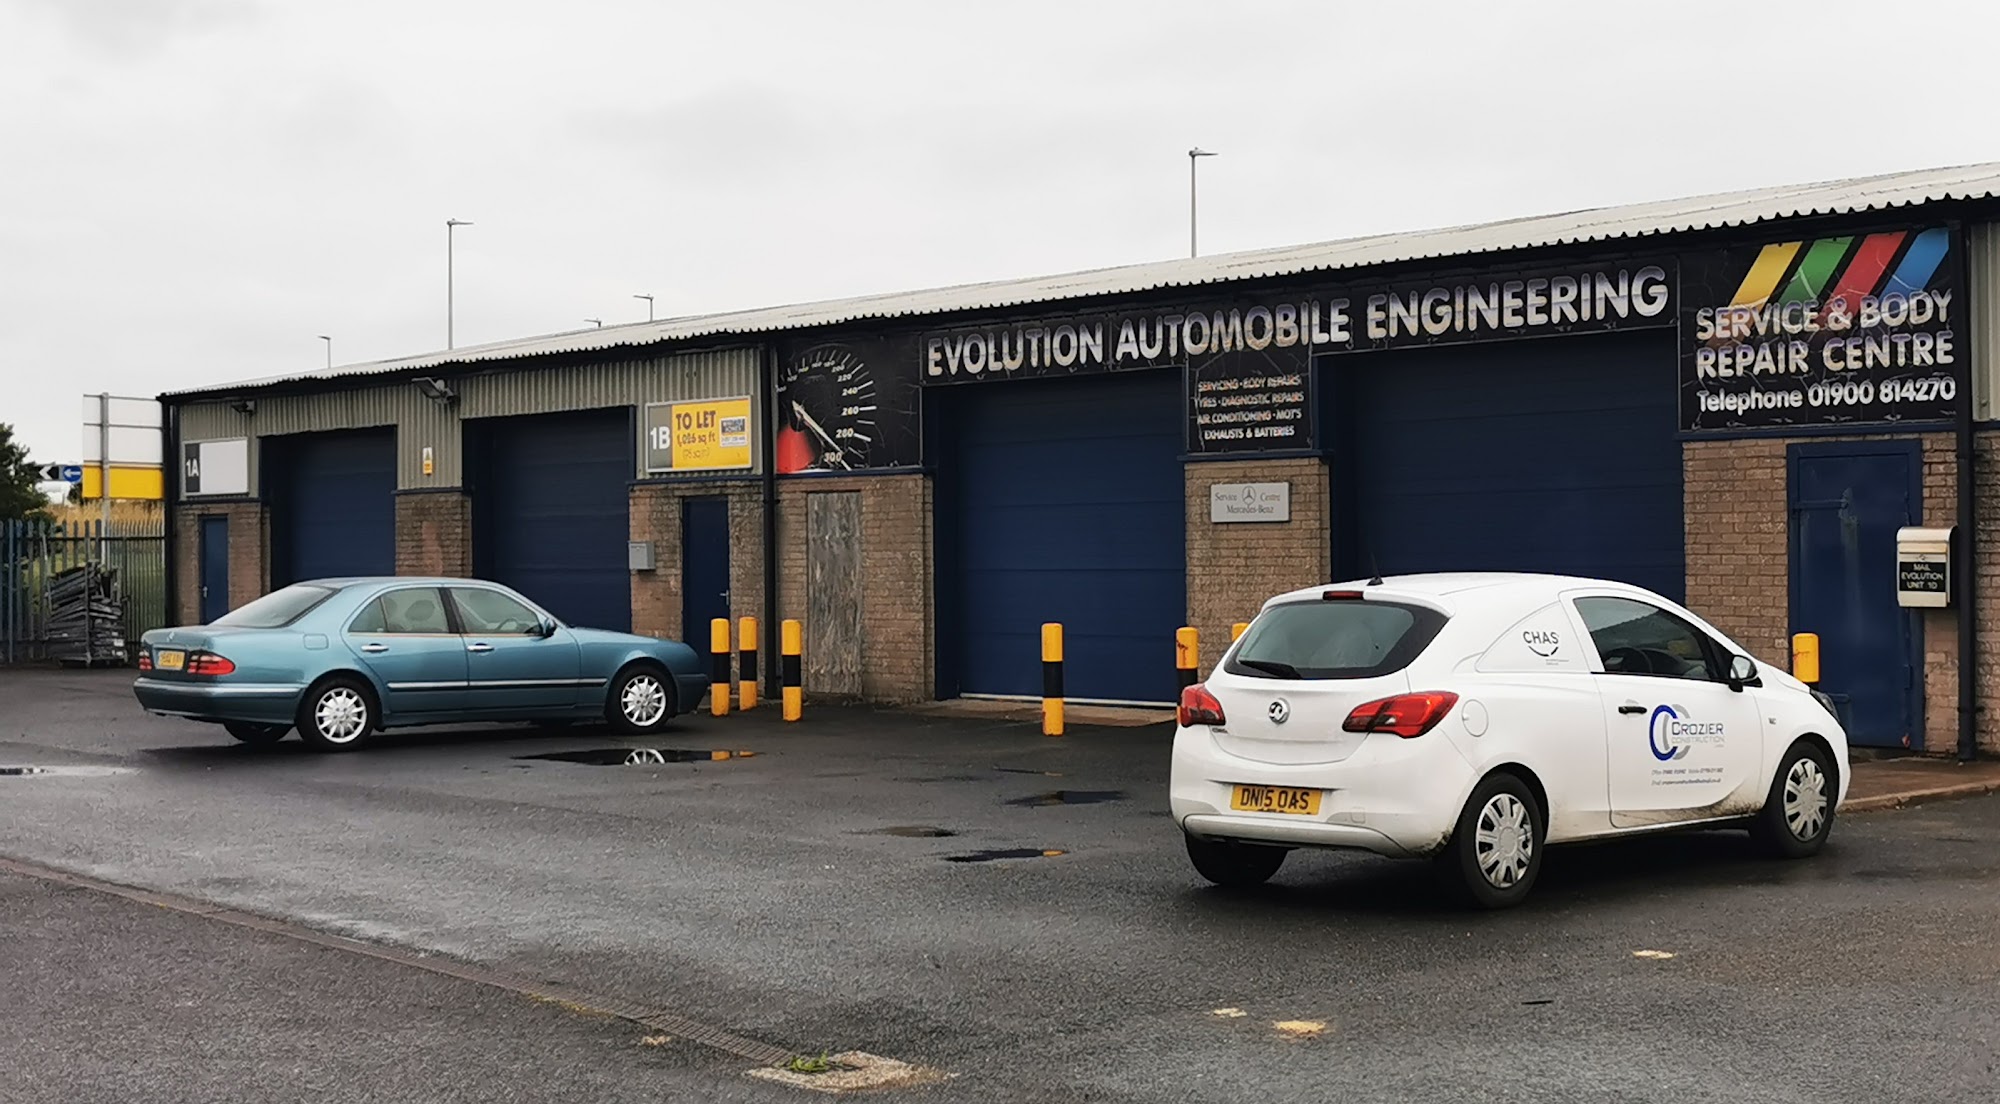 Evolution Automobile Engineering Ltd